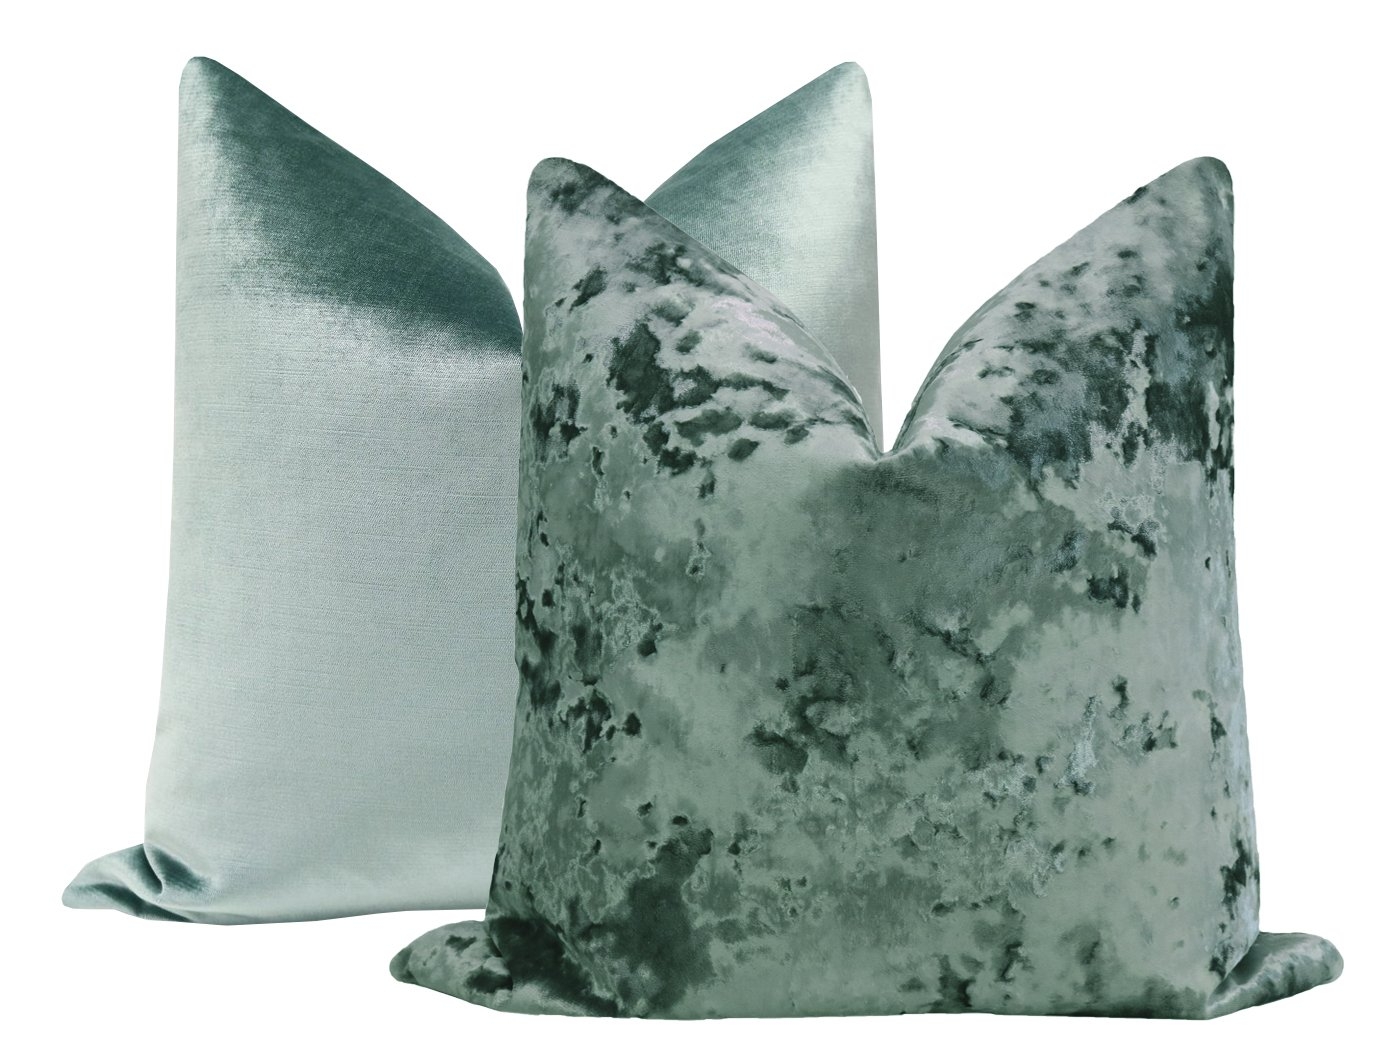 Lavish Velvet Pillow Cover, Aegean, 20" x 20" - Image 2